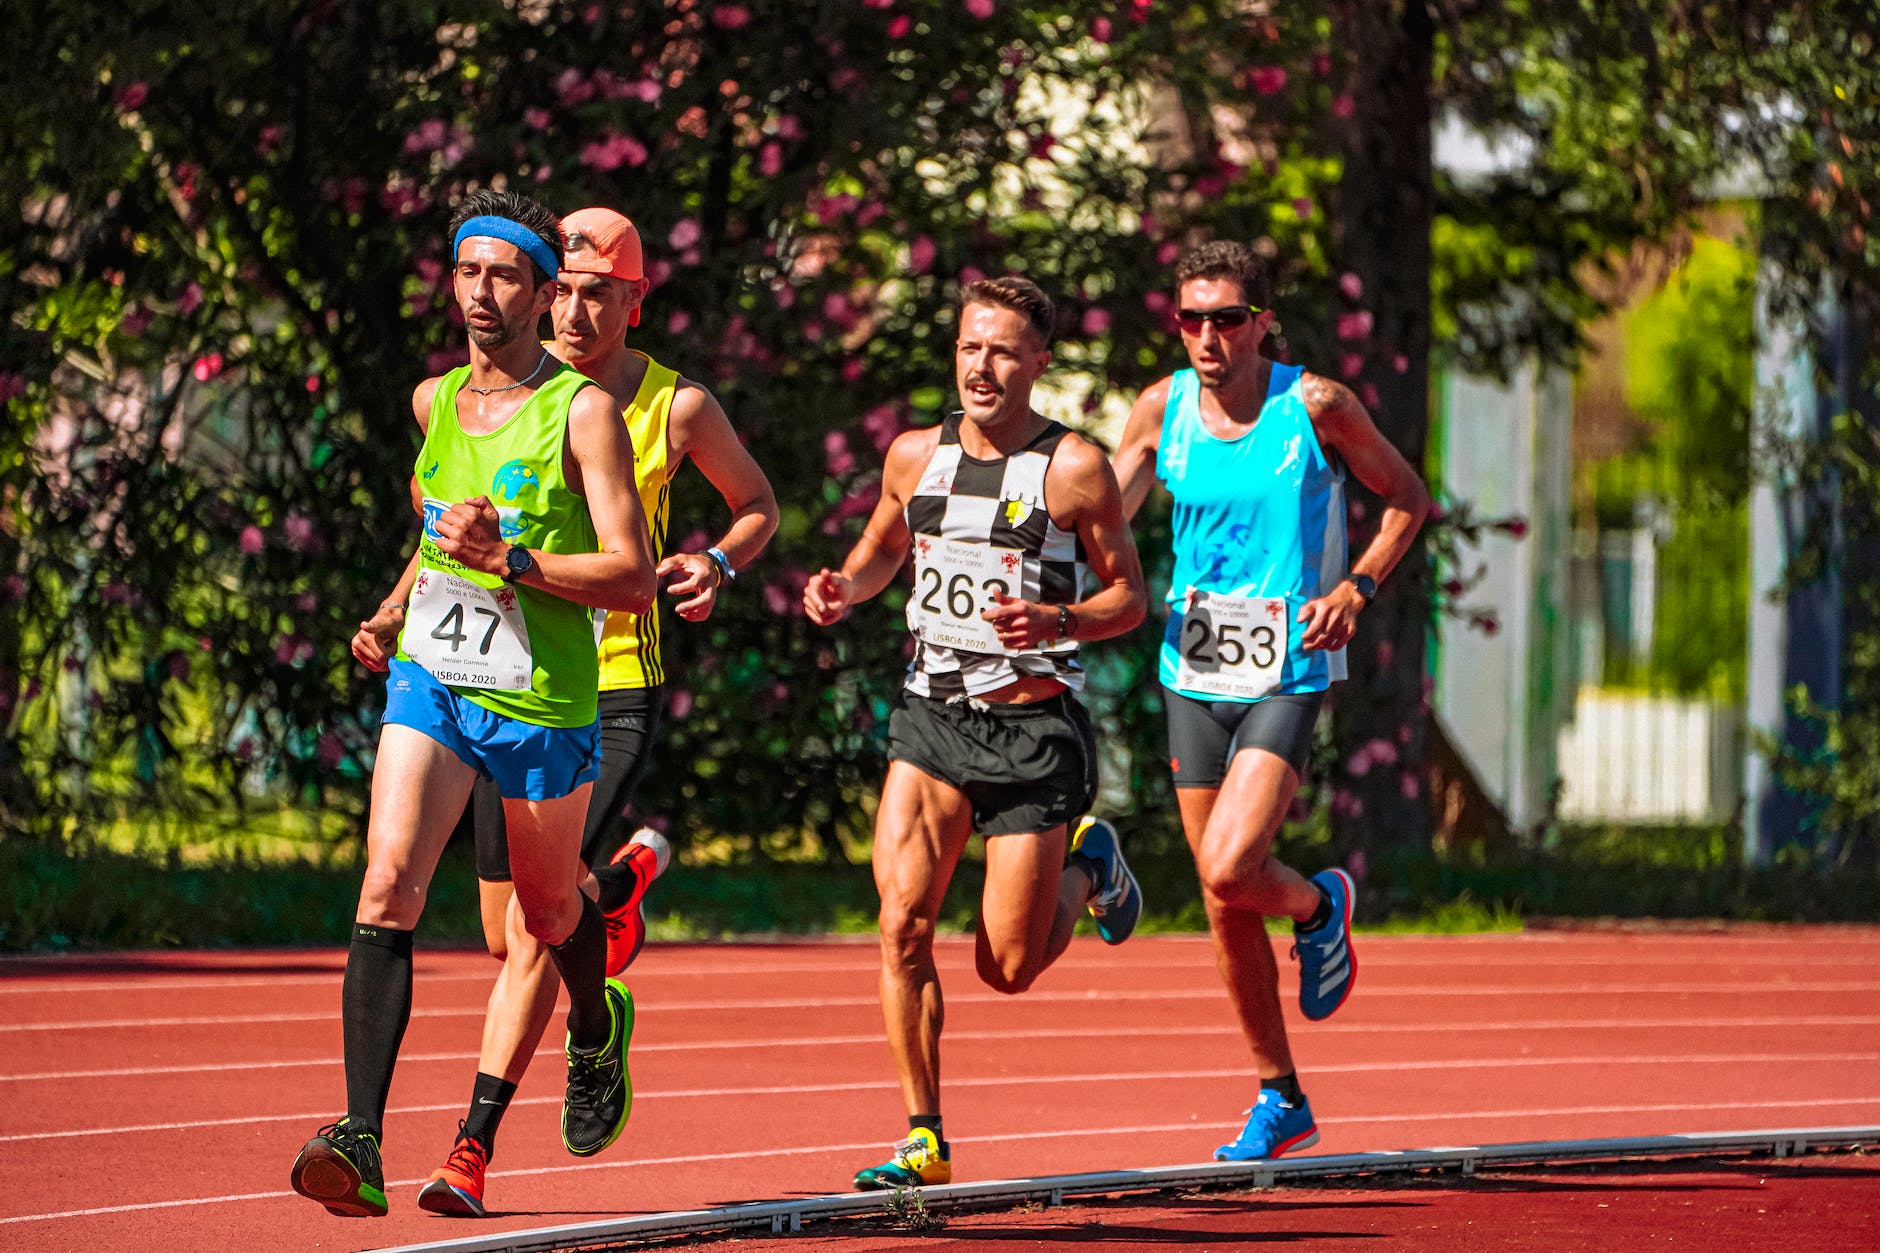 athlètes rapides en tenue de sport colorée courant pendant une compétition d'athlétisme